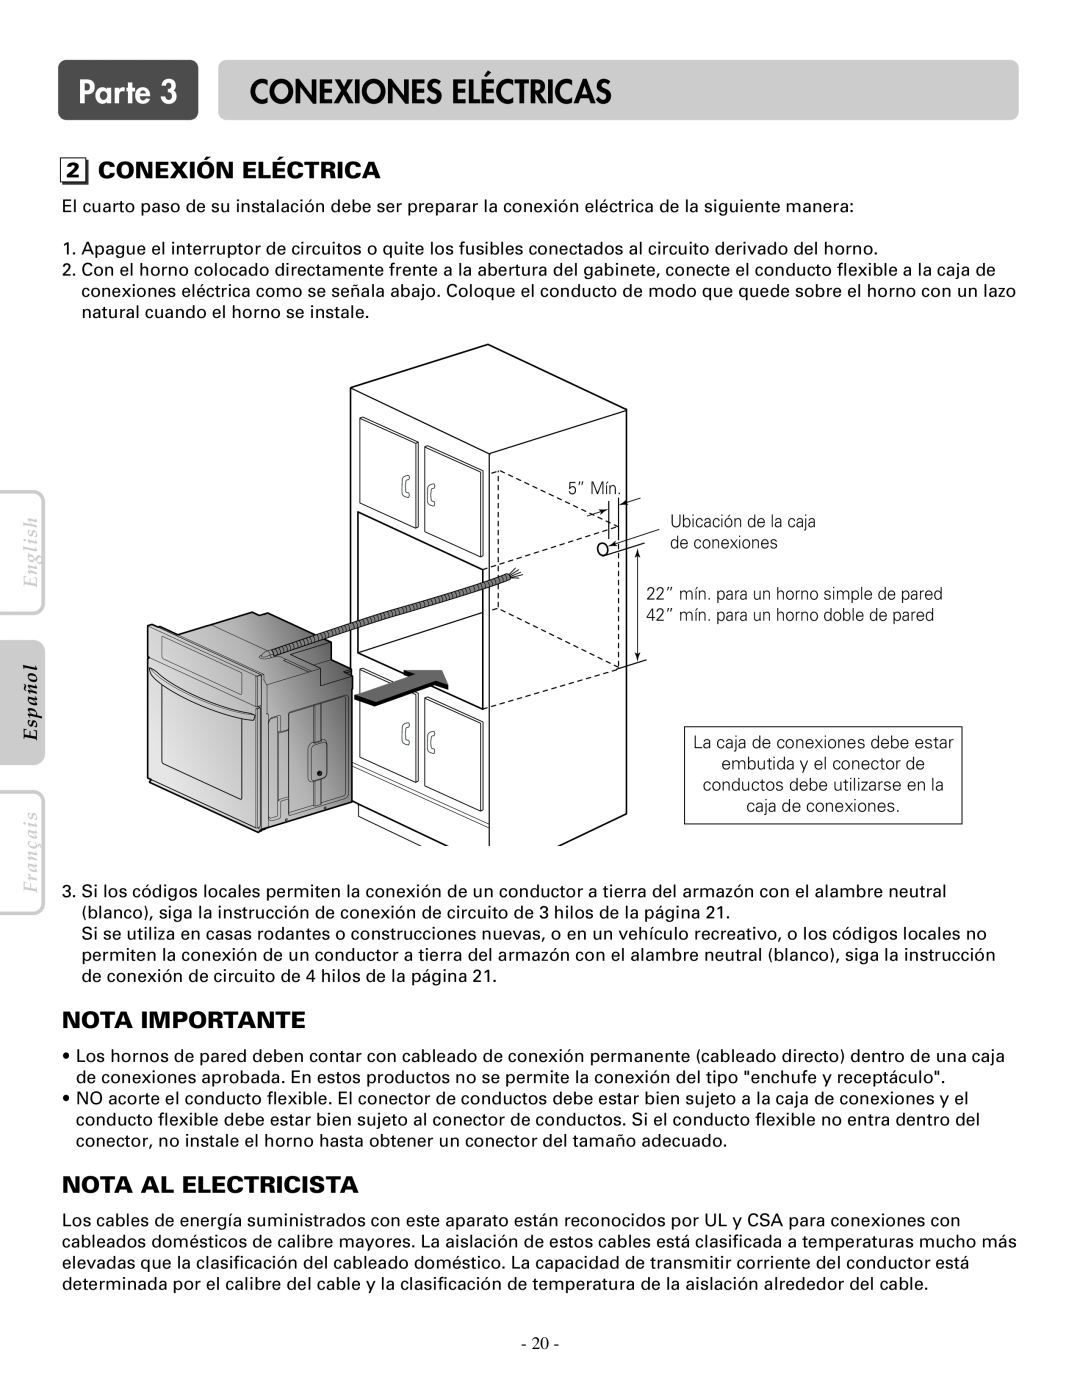 LG Electronics LWS3081ST Conexión Eléctrica, Nota Al Electricista, Parte 3 CONEXIONES ELÉCTRICAS, Nota Importante 